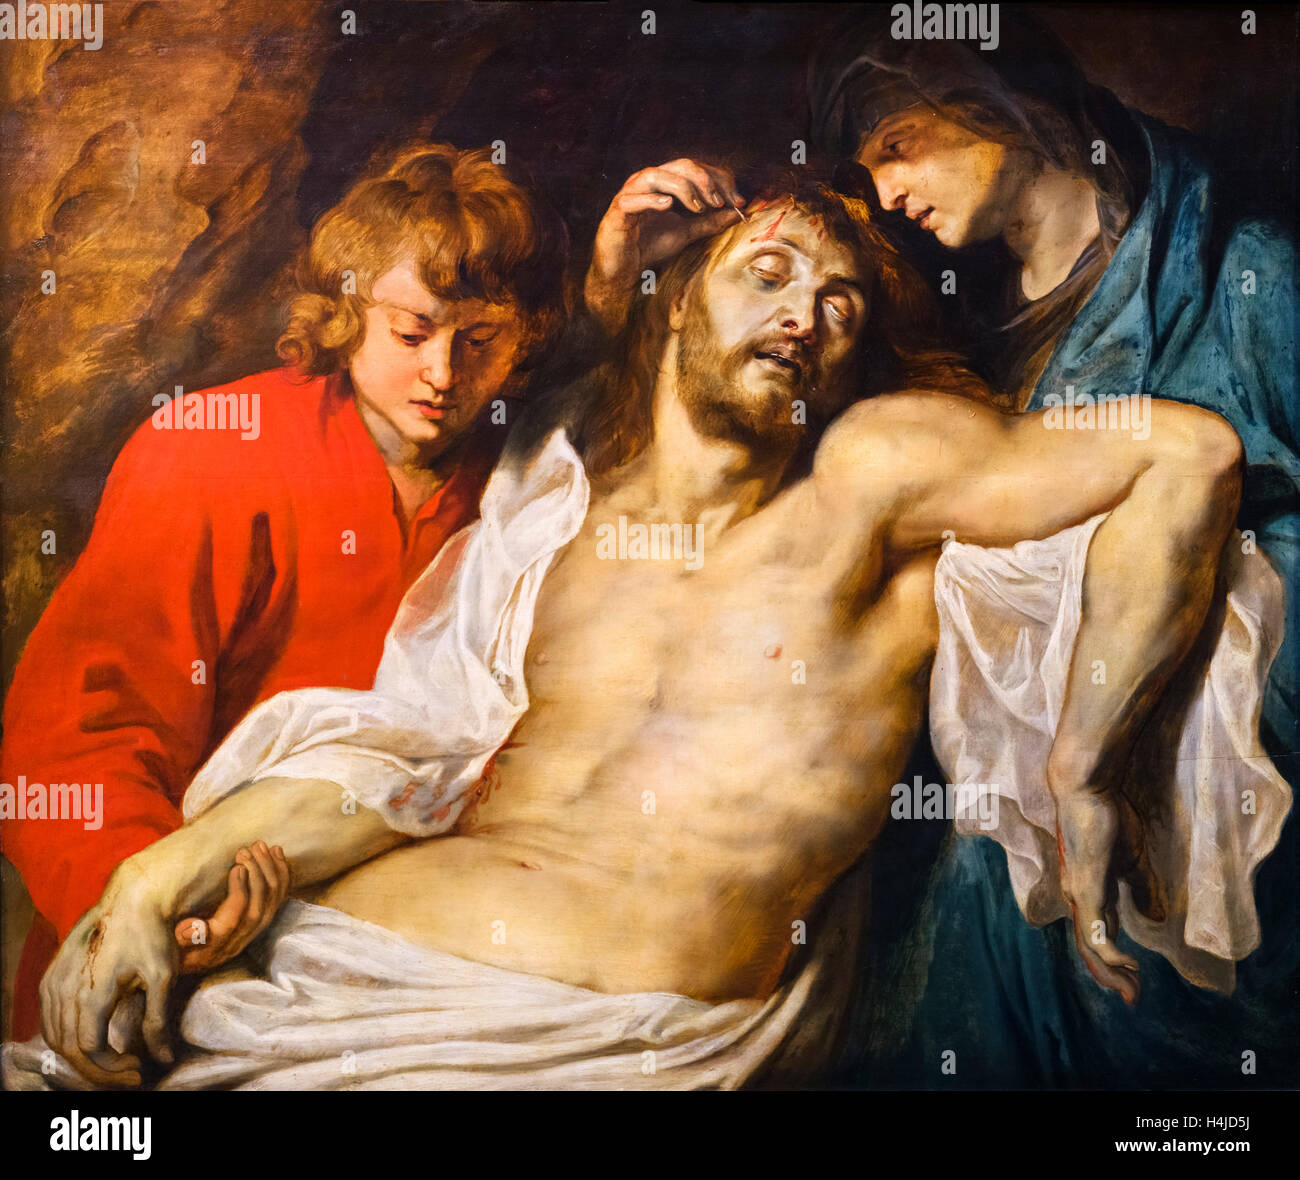 'La lamentación de Cristo por la Virgen María y Juan' por Peter Paul Rubens (1577-1640), c.1614/15 Foto de stock